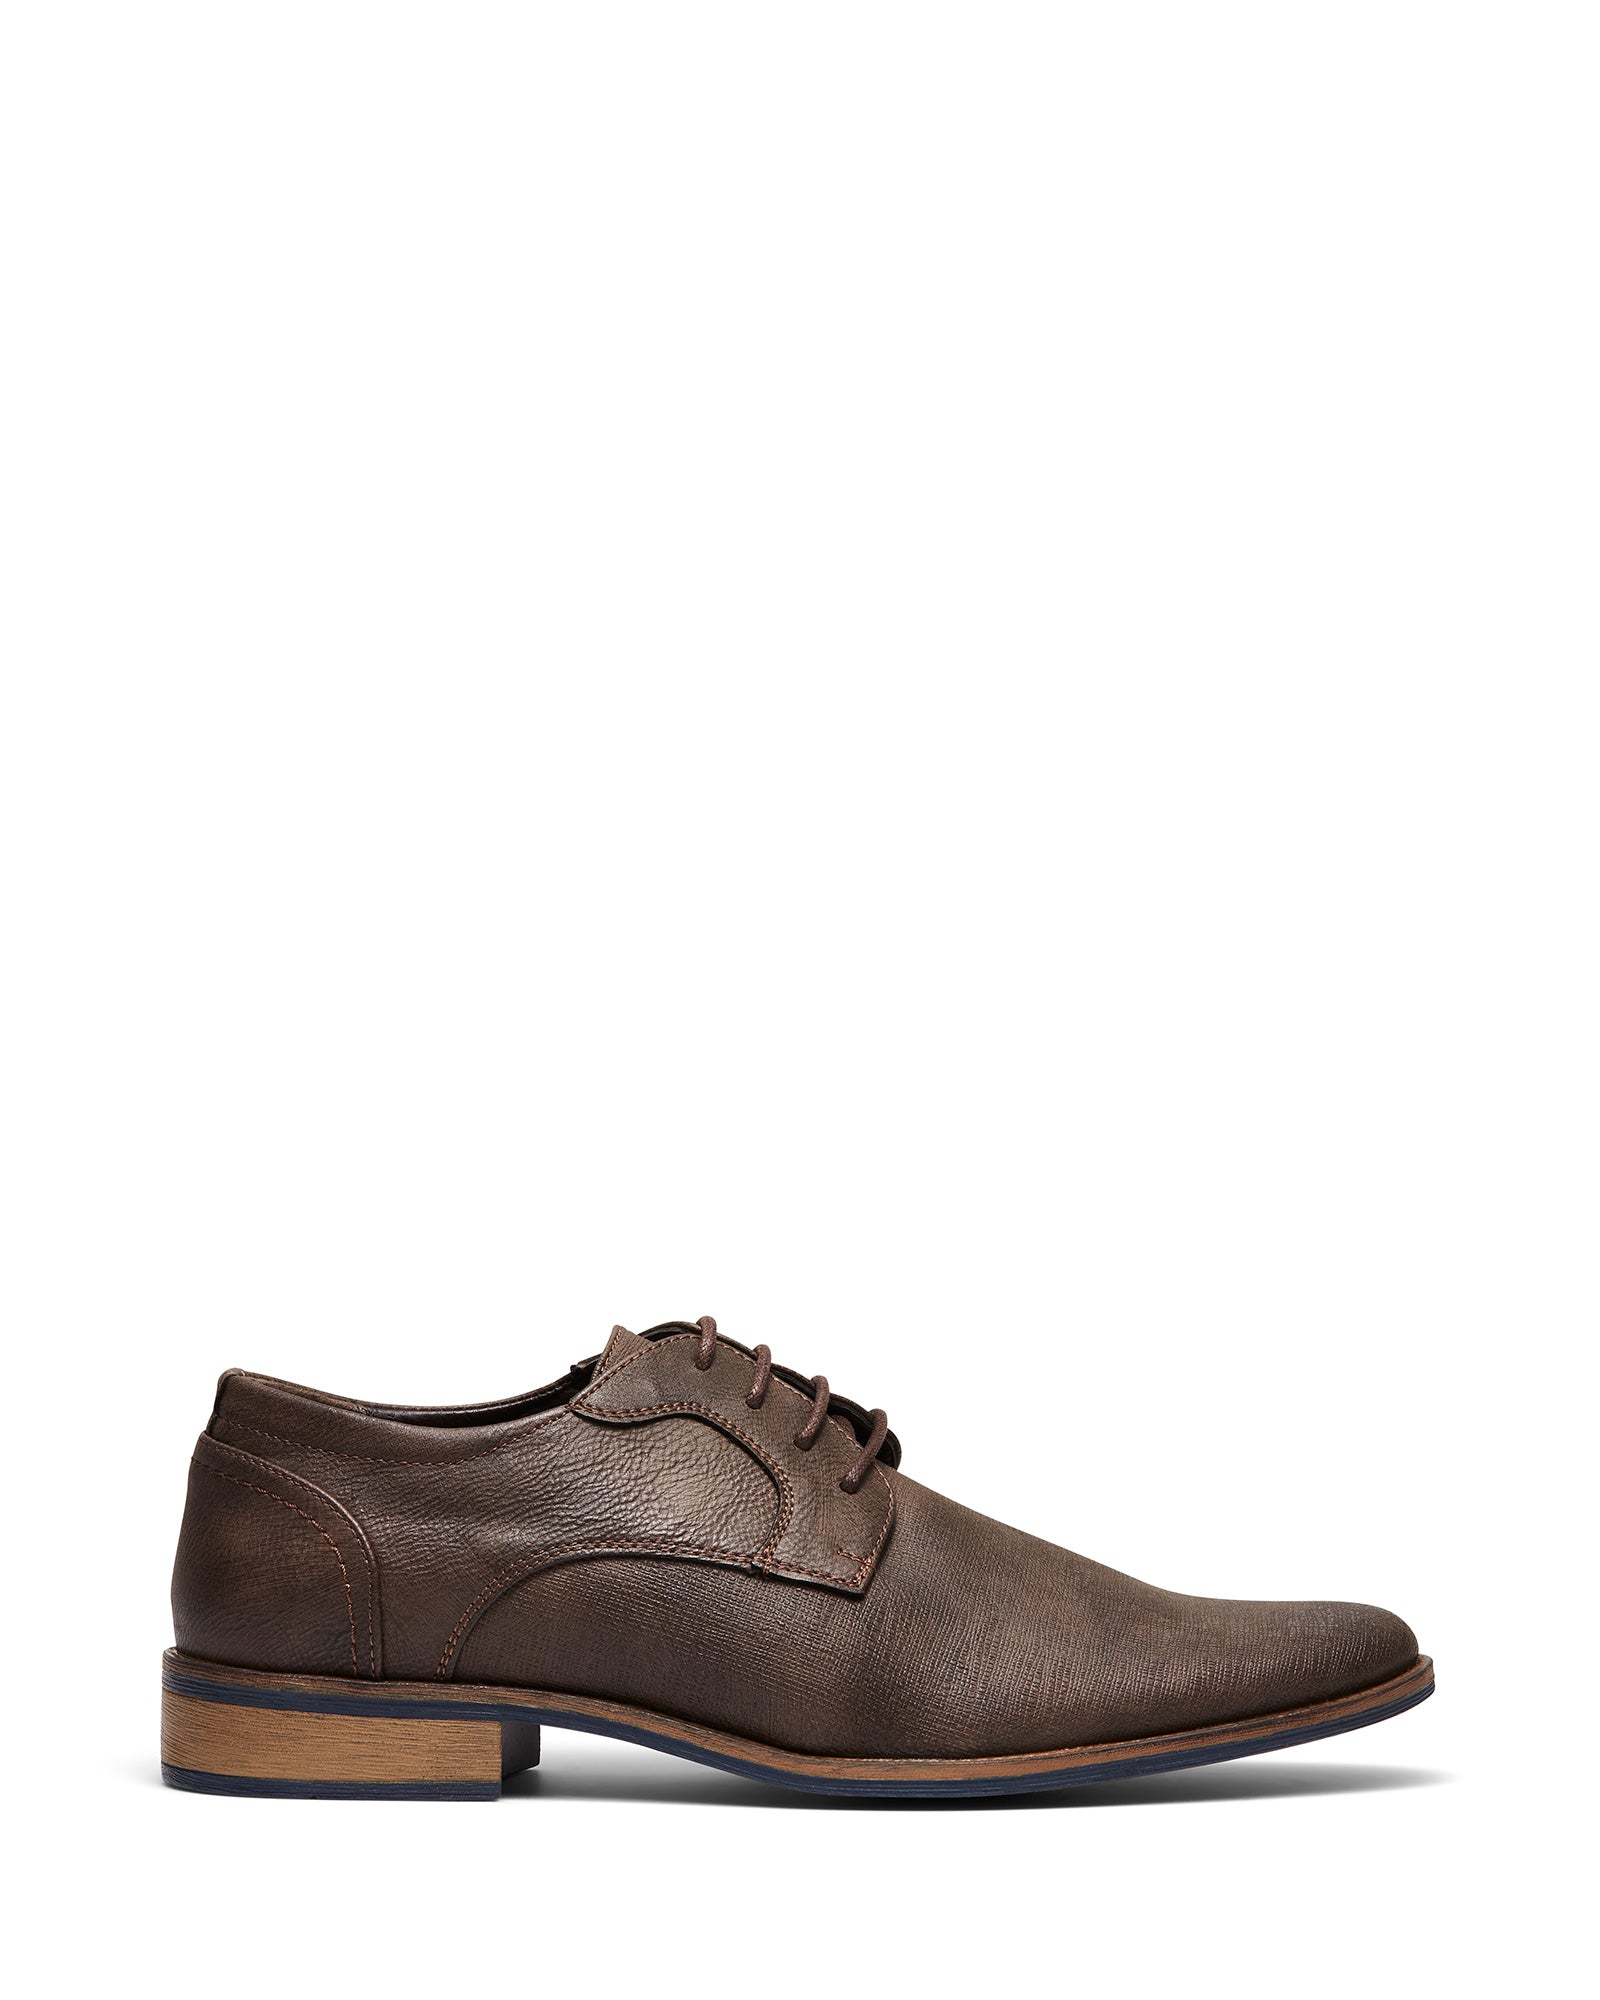 Uncut Shoes Hartley Chocolate | Men's Dress Shoe | Derby | Lace Up